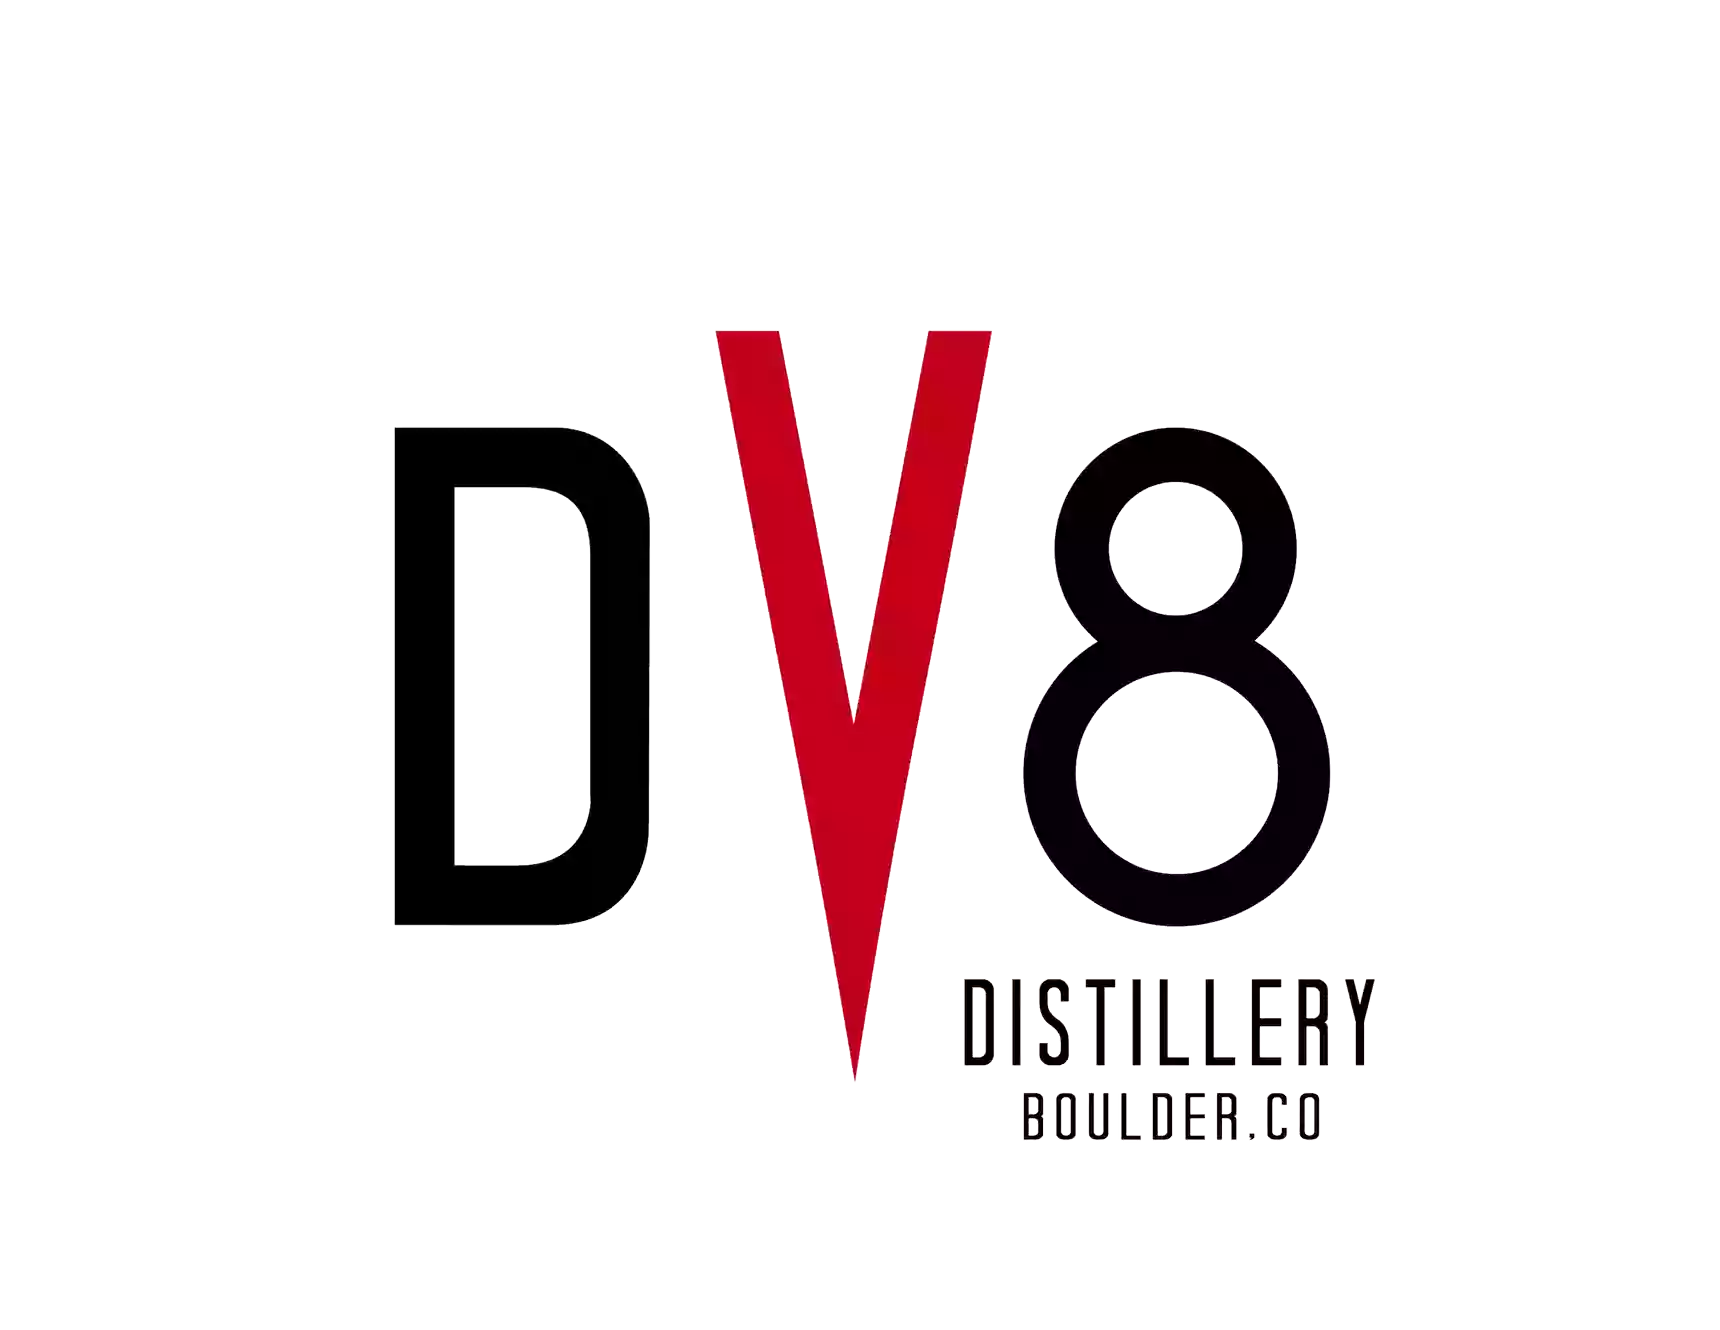 DV8 Distillery